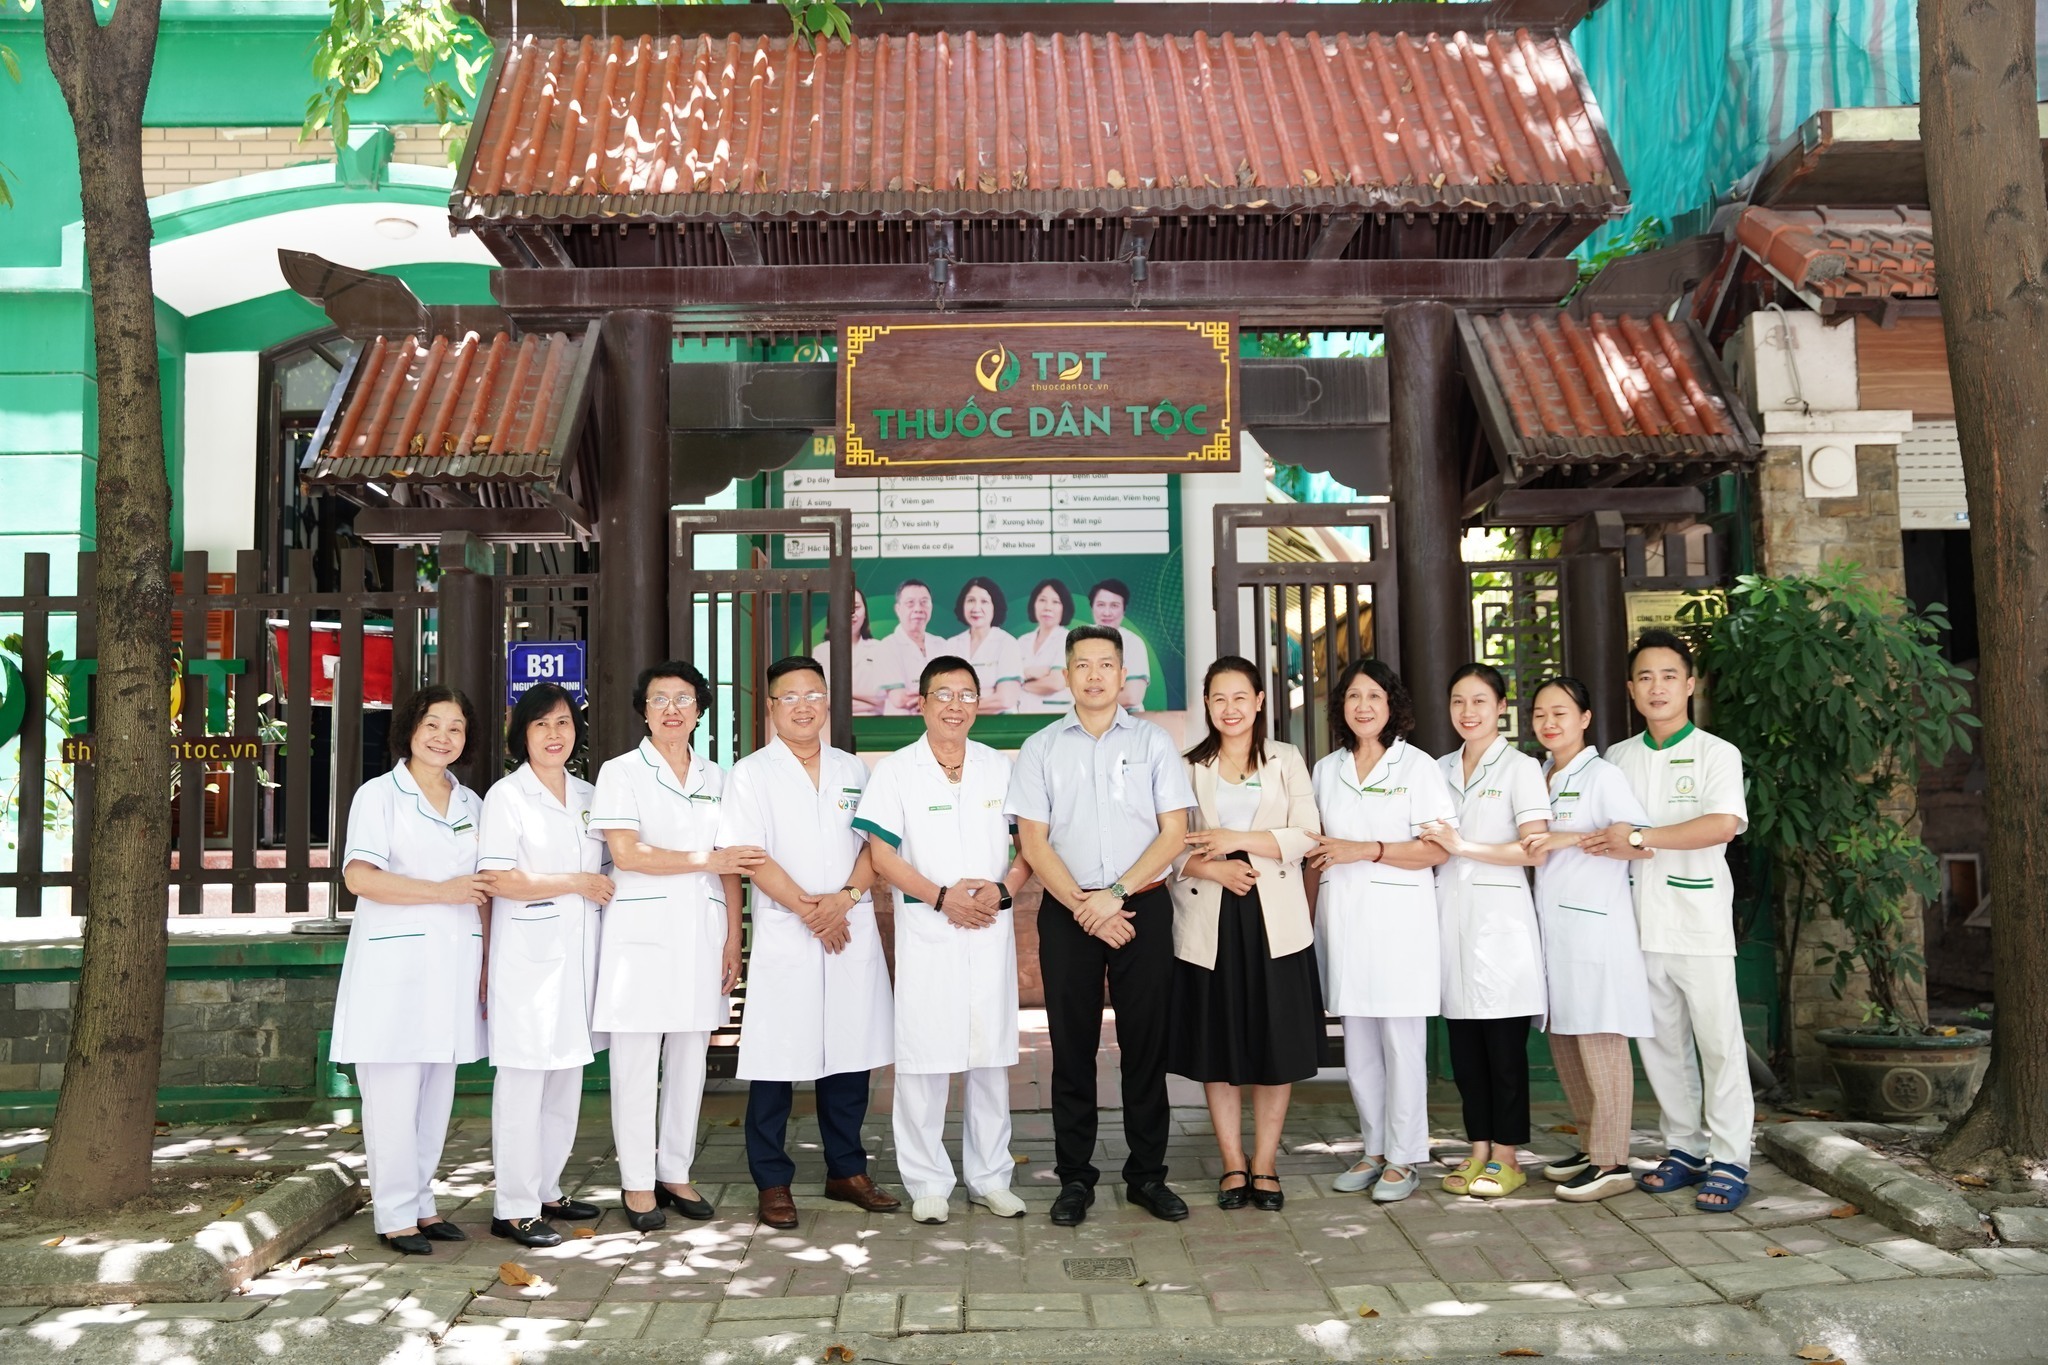 Trung tâm Thuốc Dân Tộc tại Hà Nội là địa chỉ làm việc của bác sĩ Hà